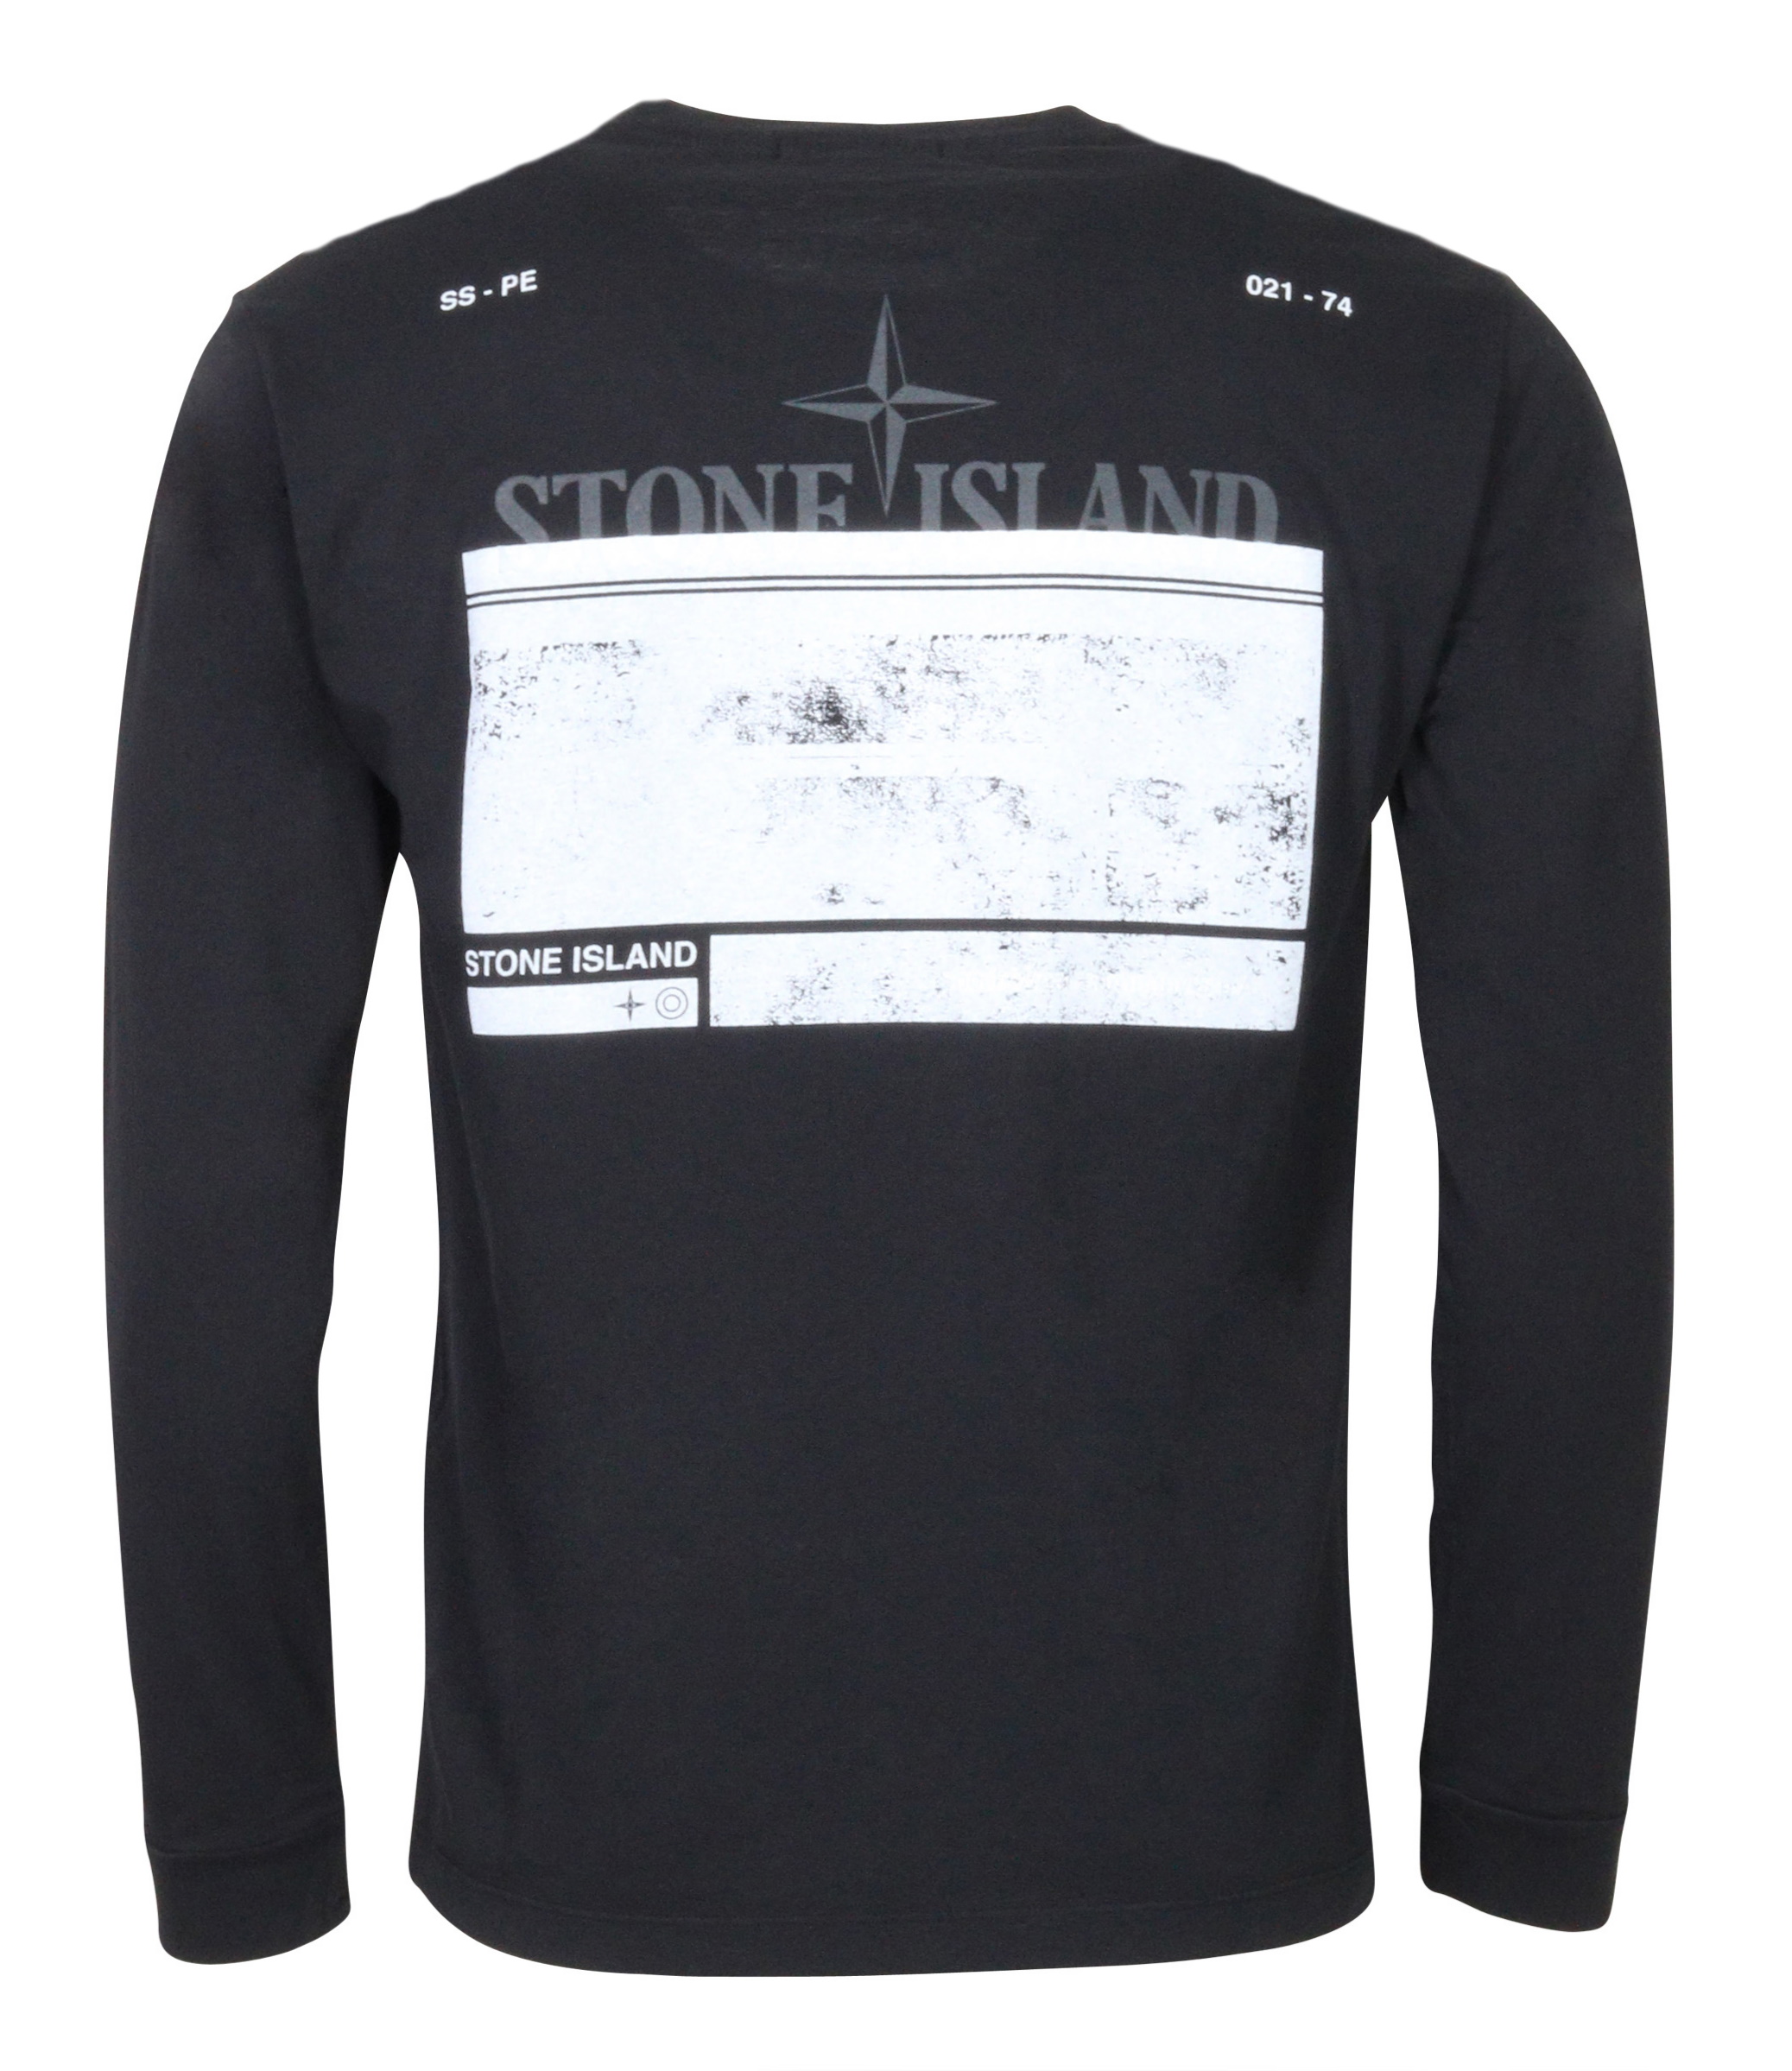 Stone Island Longsleeve Black Back Printed